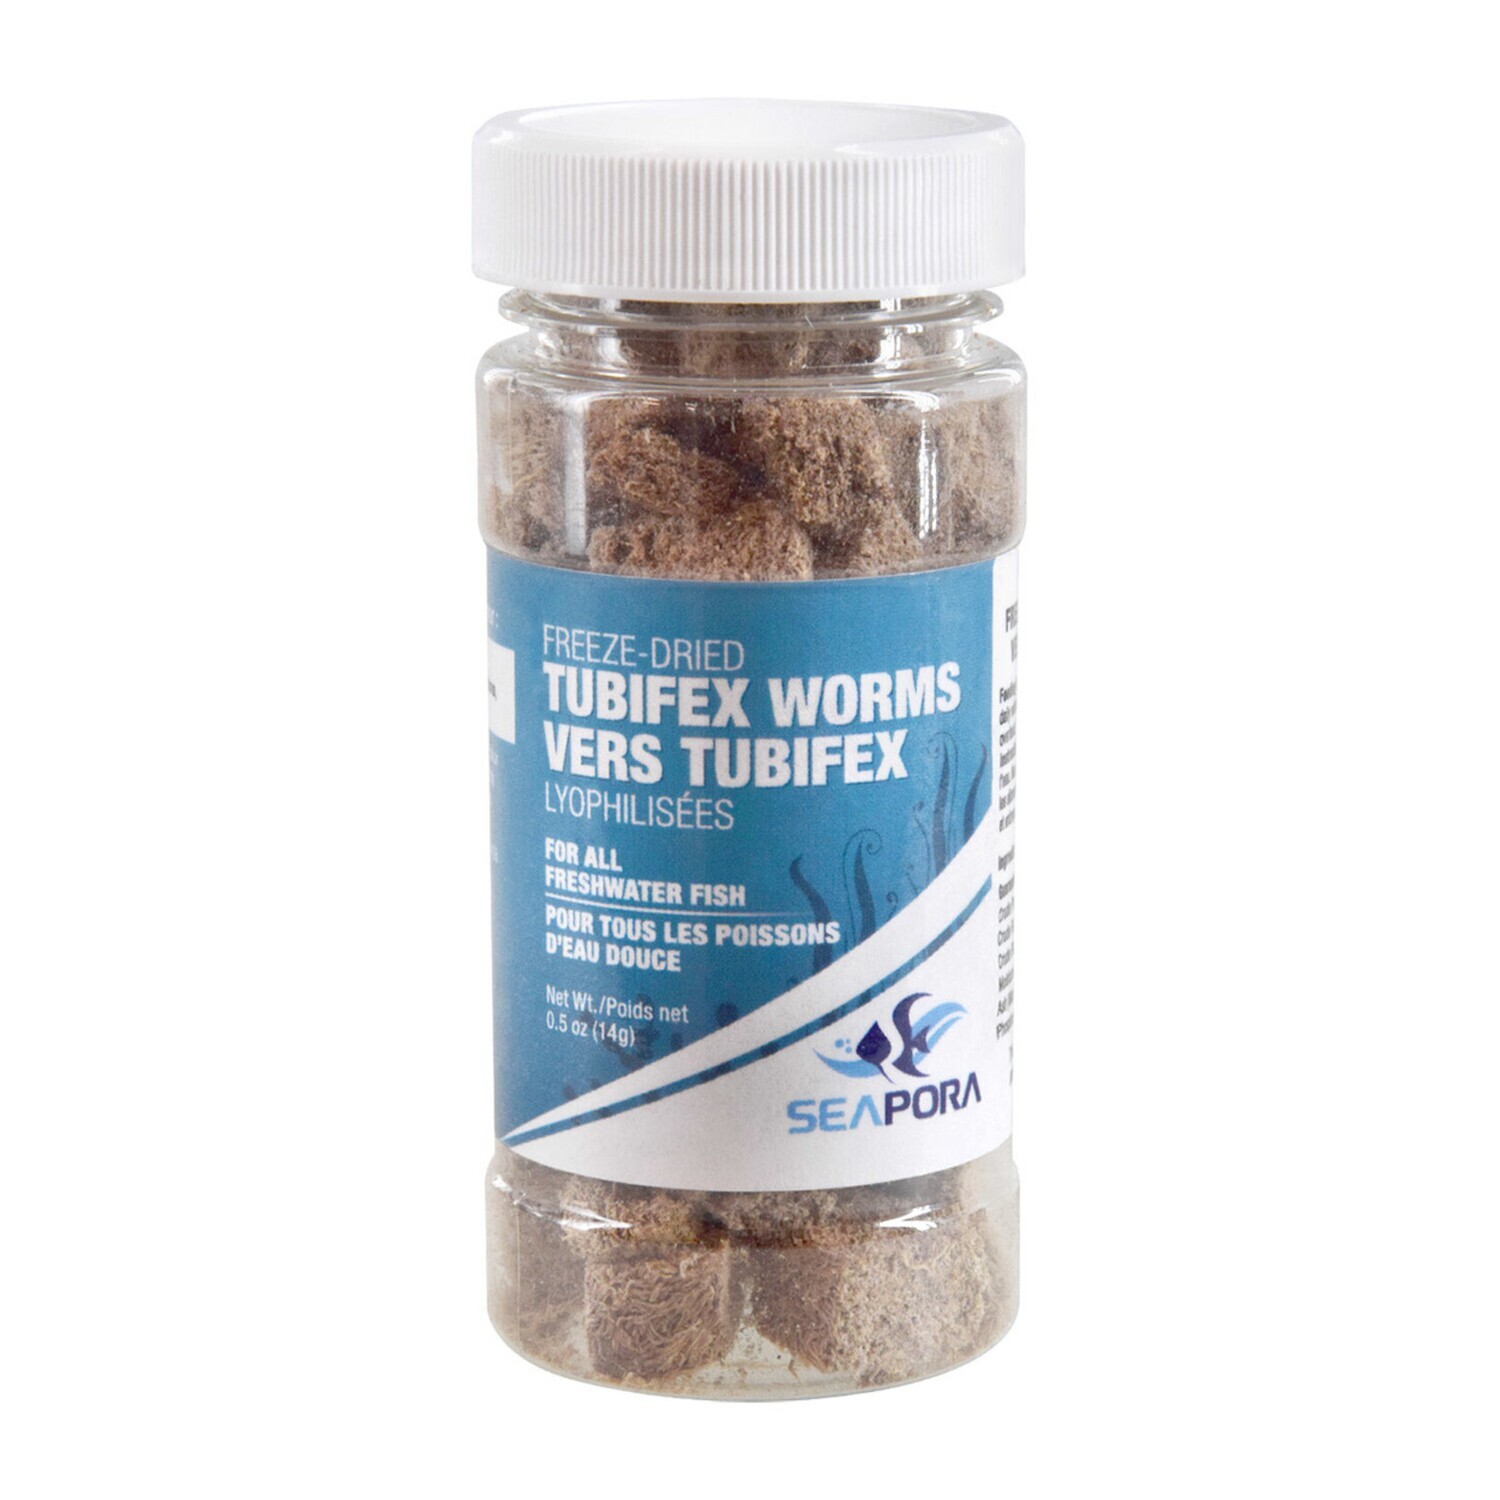 Seapora Freeze Dried Tubifex Worms 14g